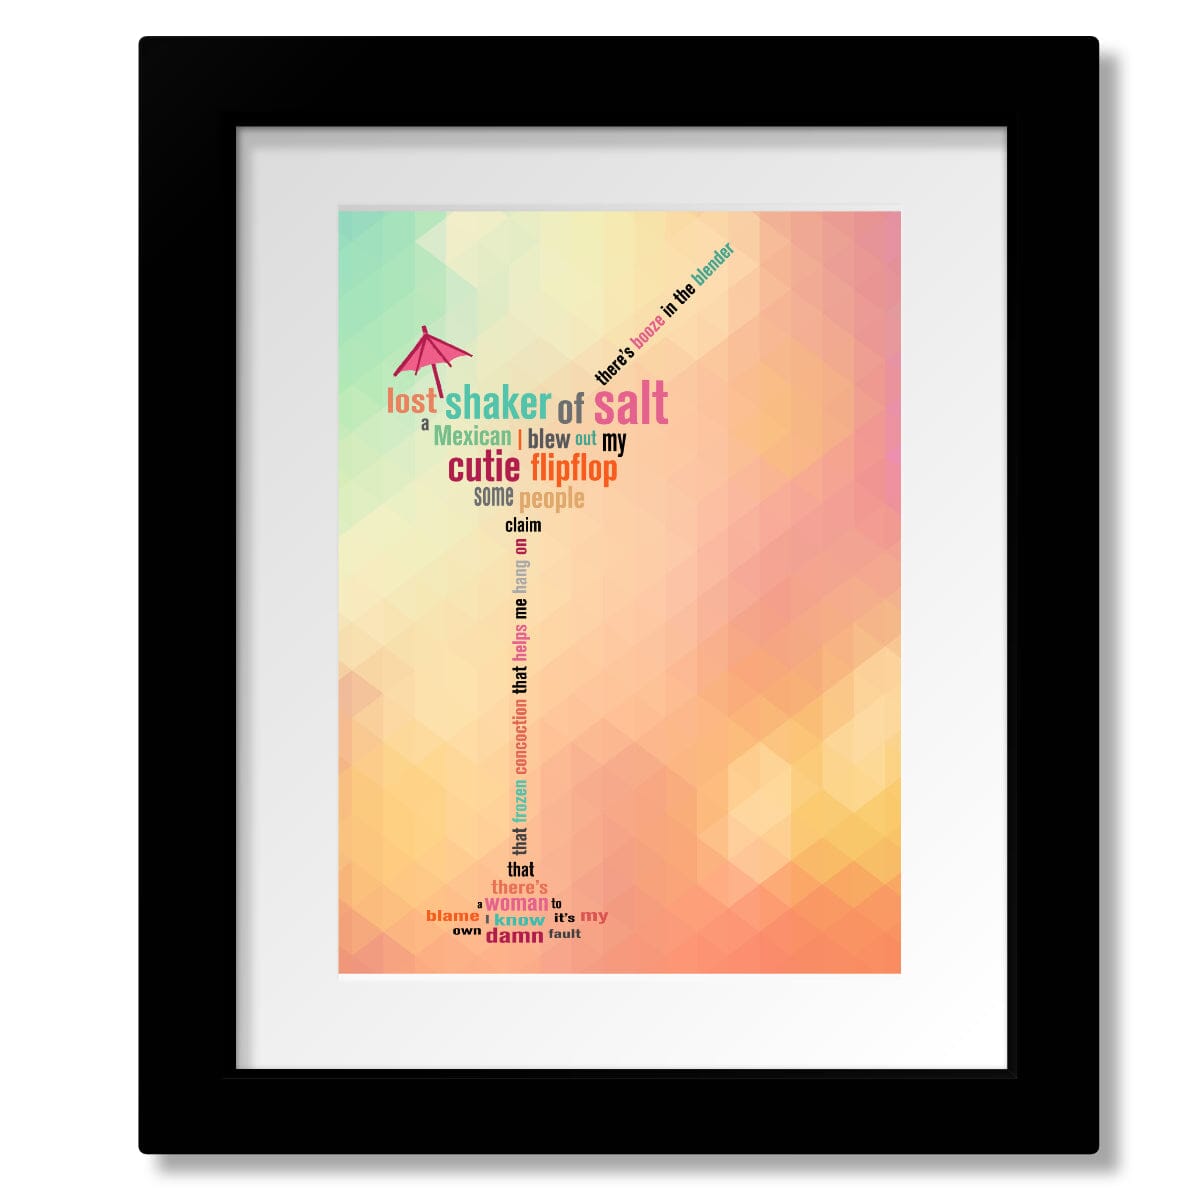 Margaritaville by Jimmy Buffett - Lyric Inspired Music Art Song Lyrics Art Song Lyrics Art 8x10 Matted and Framed Print 